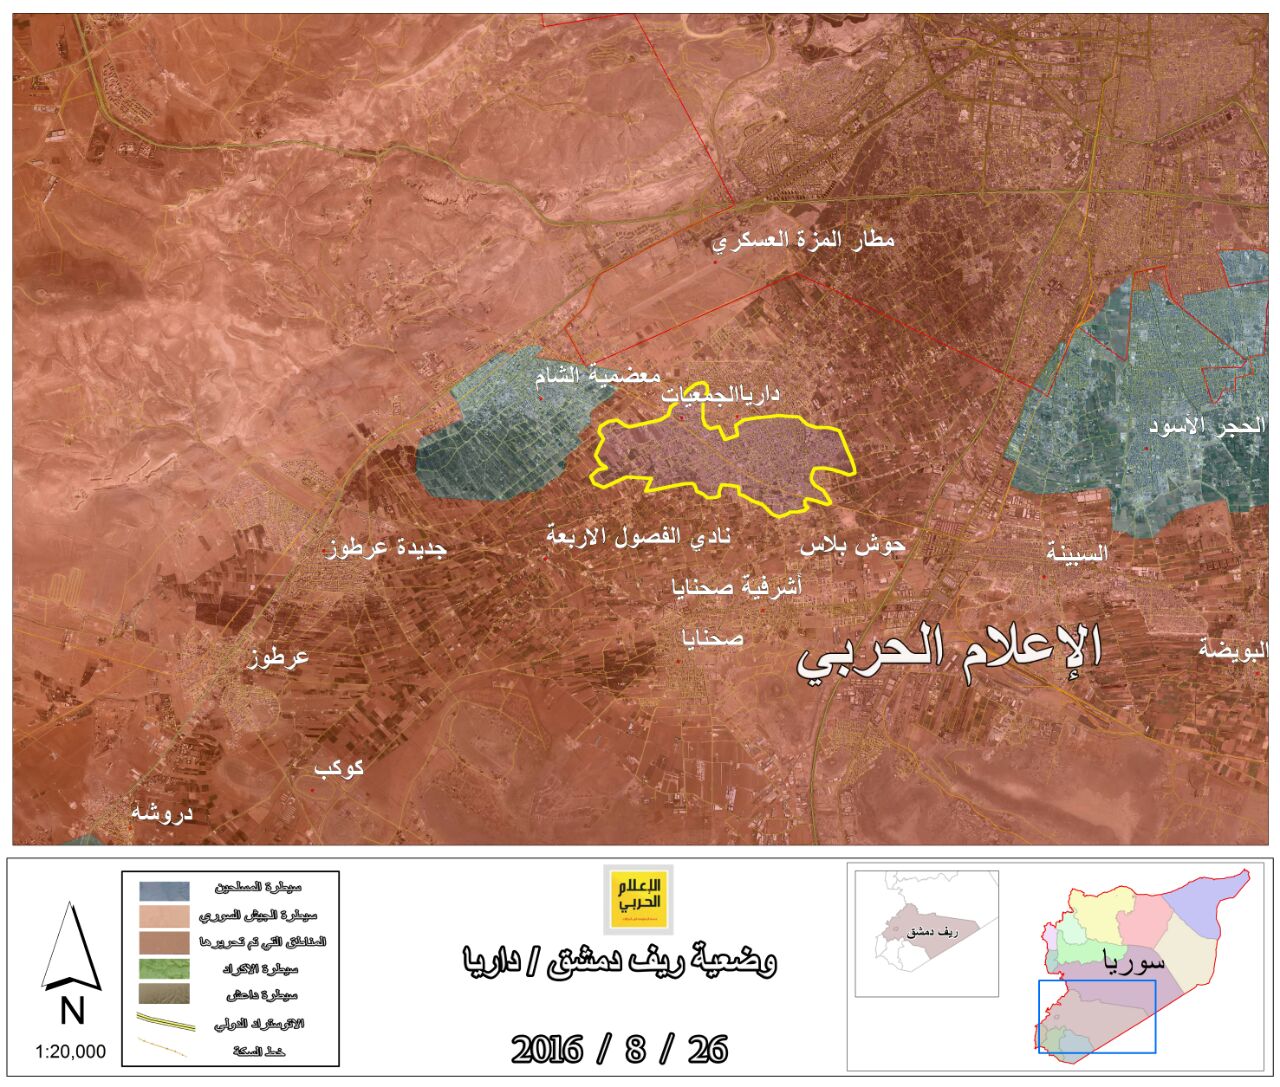 تروریست های جیش الاسلام خسته از جنگ با ارتش سوریه/آیا الگوی "داریا" در "دوما" پیاده می شود؟ + نقشه و جزئیات